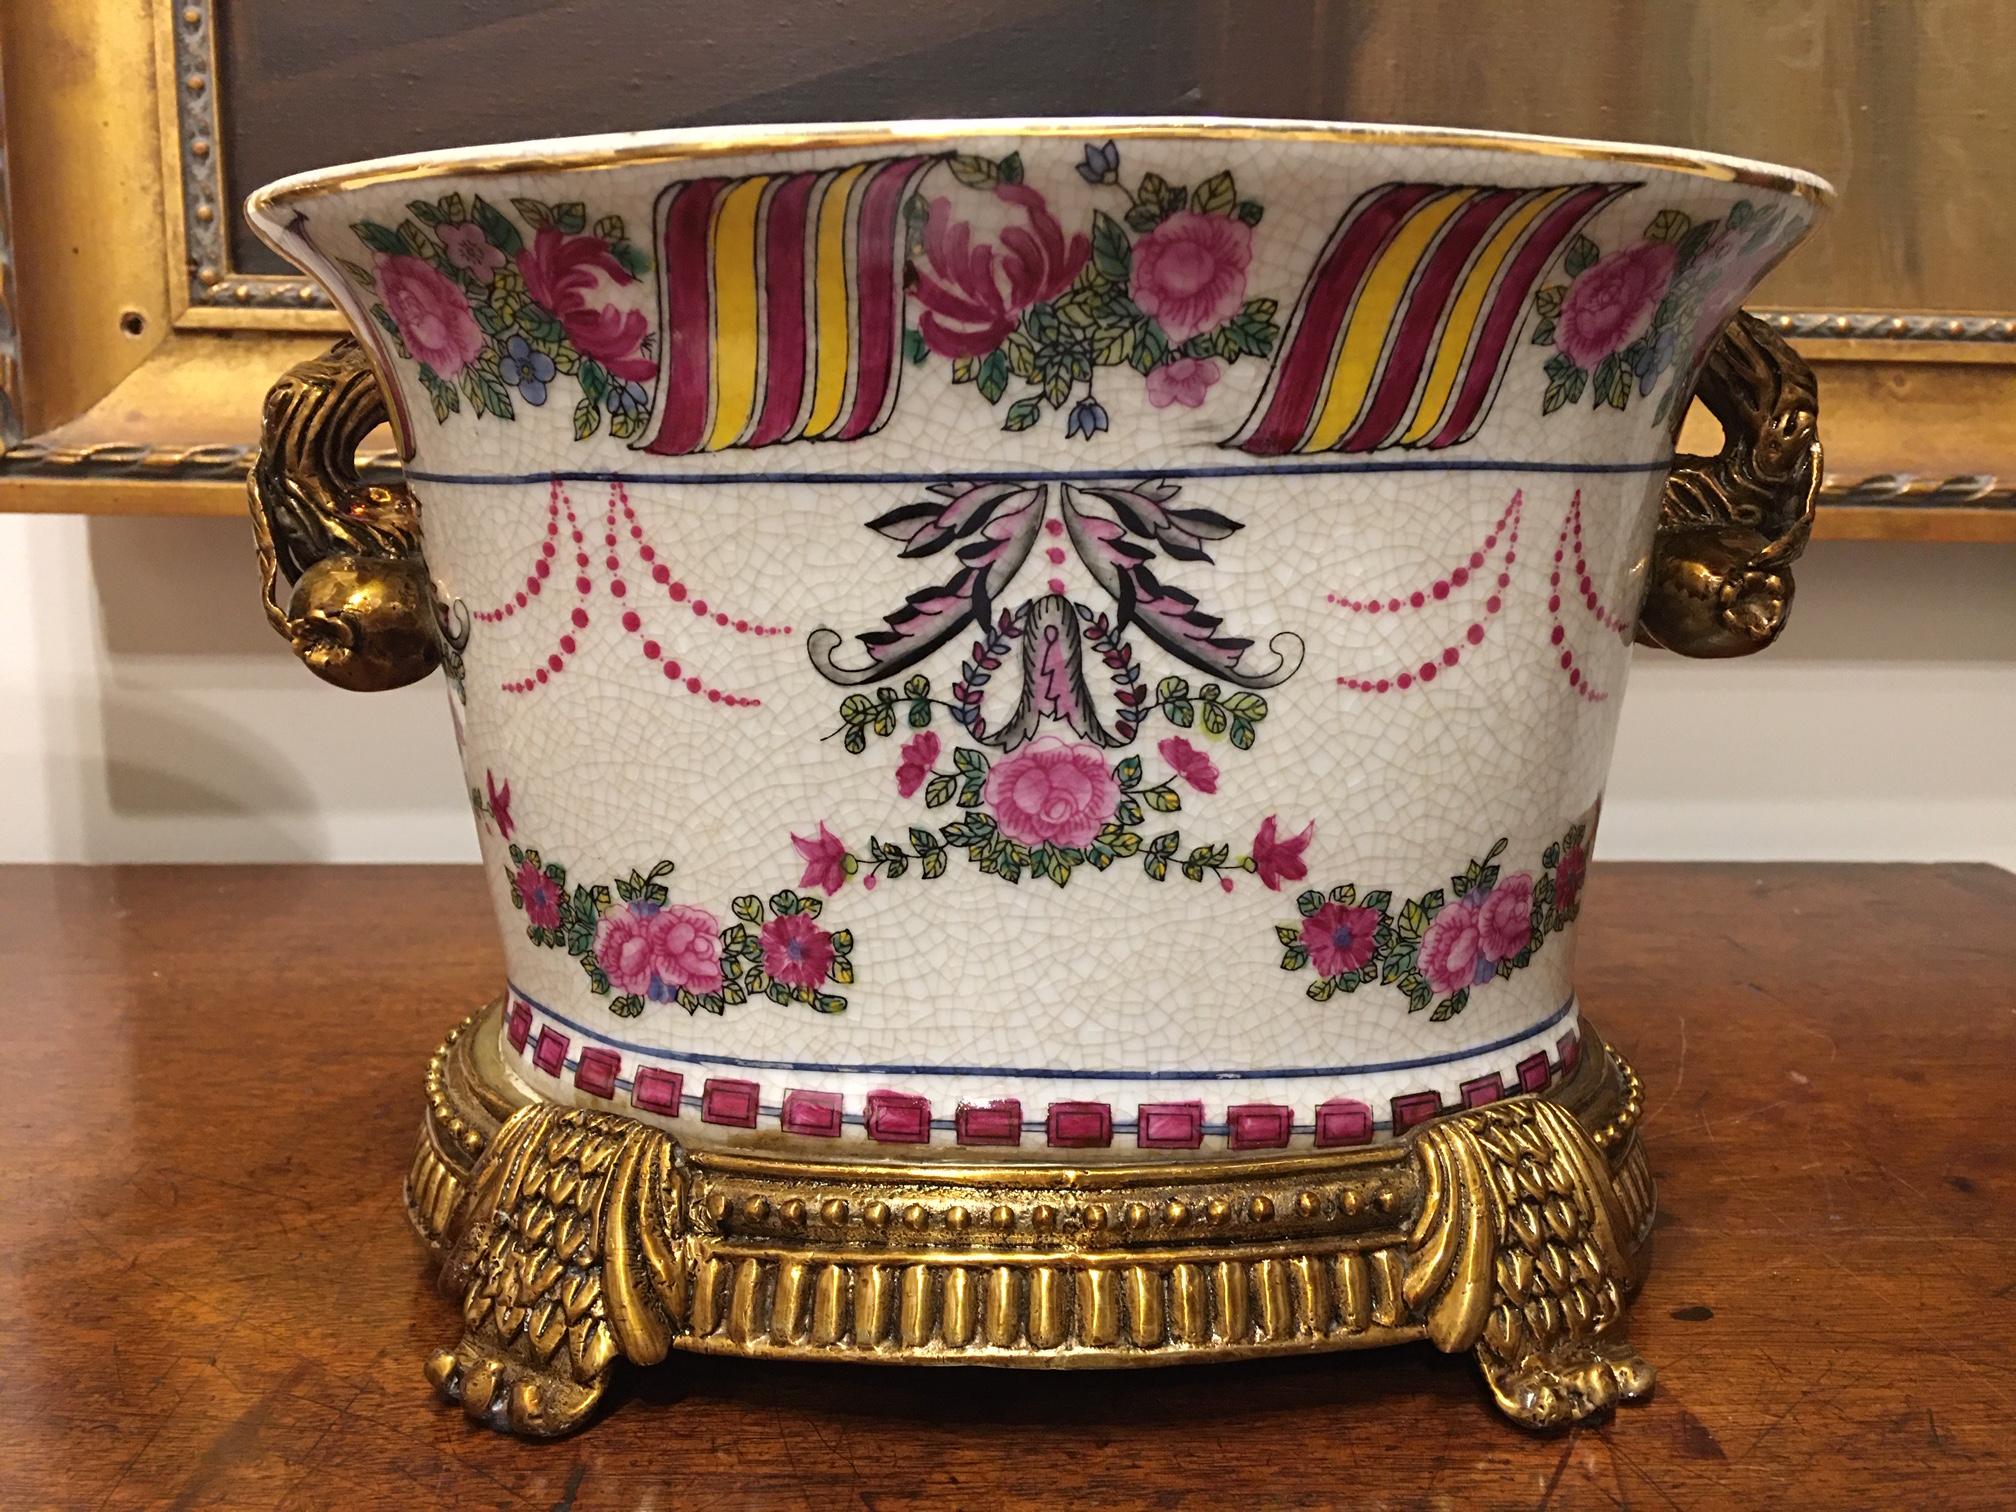 Pair of Porcelain Cache Pots or Jardinières with a Floral Motif, 20th Century 2